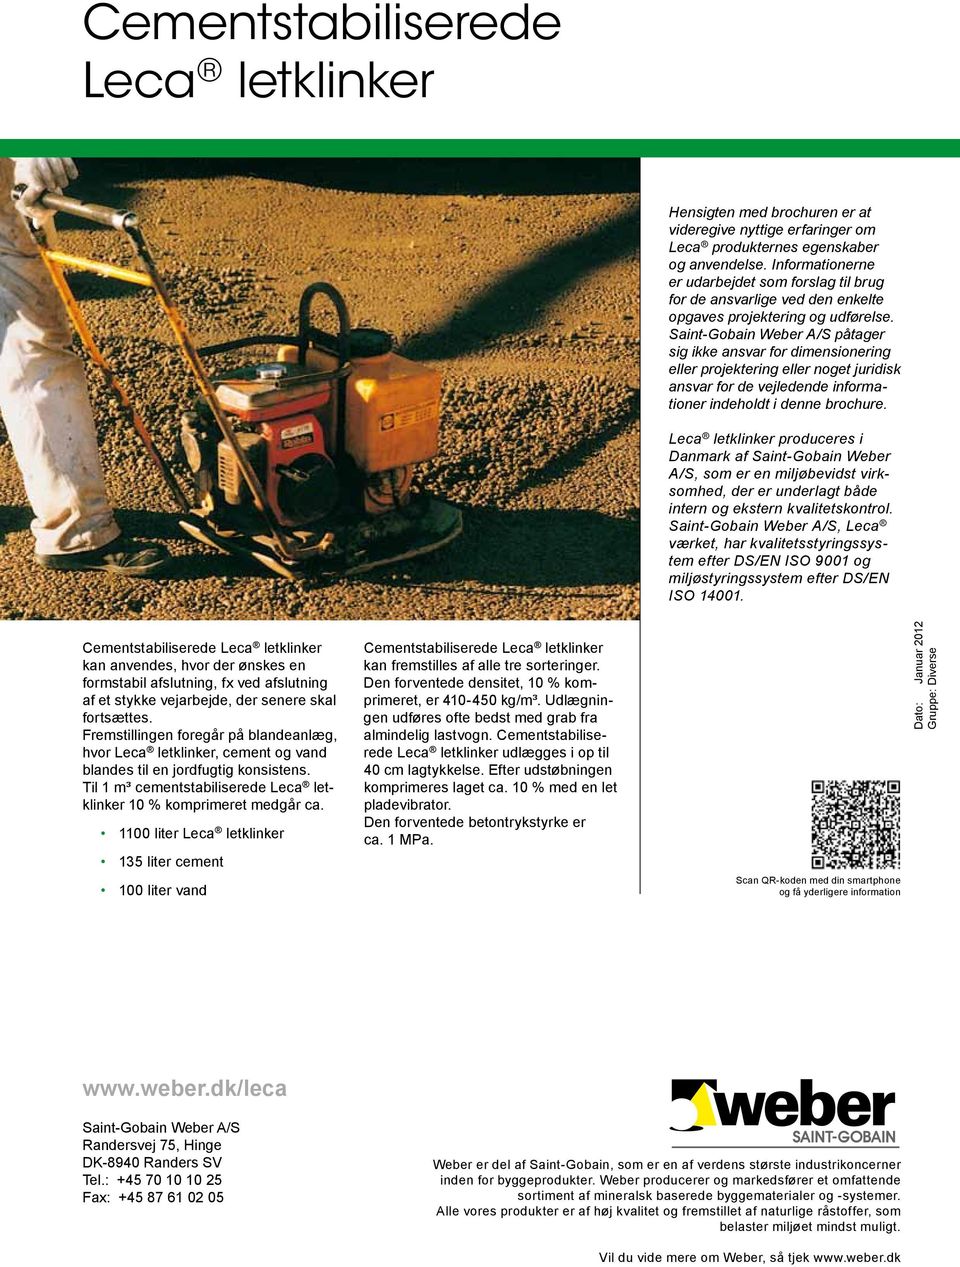 Saint-Gobain Weber A/S påtager sig ikke ansvar for dimensionering eller projektering eller noget juridisk ansvar for de vejledende informationer indeholdt i denne brochure.